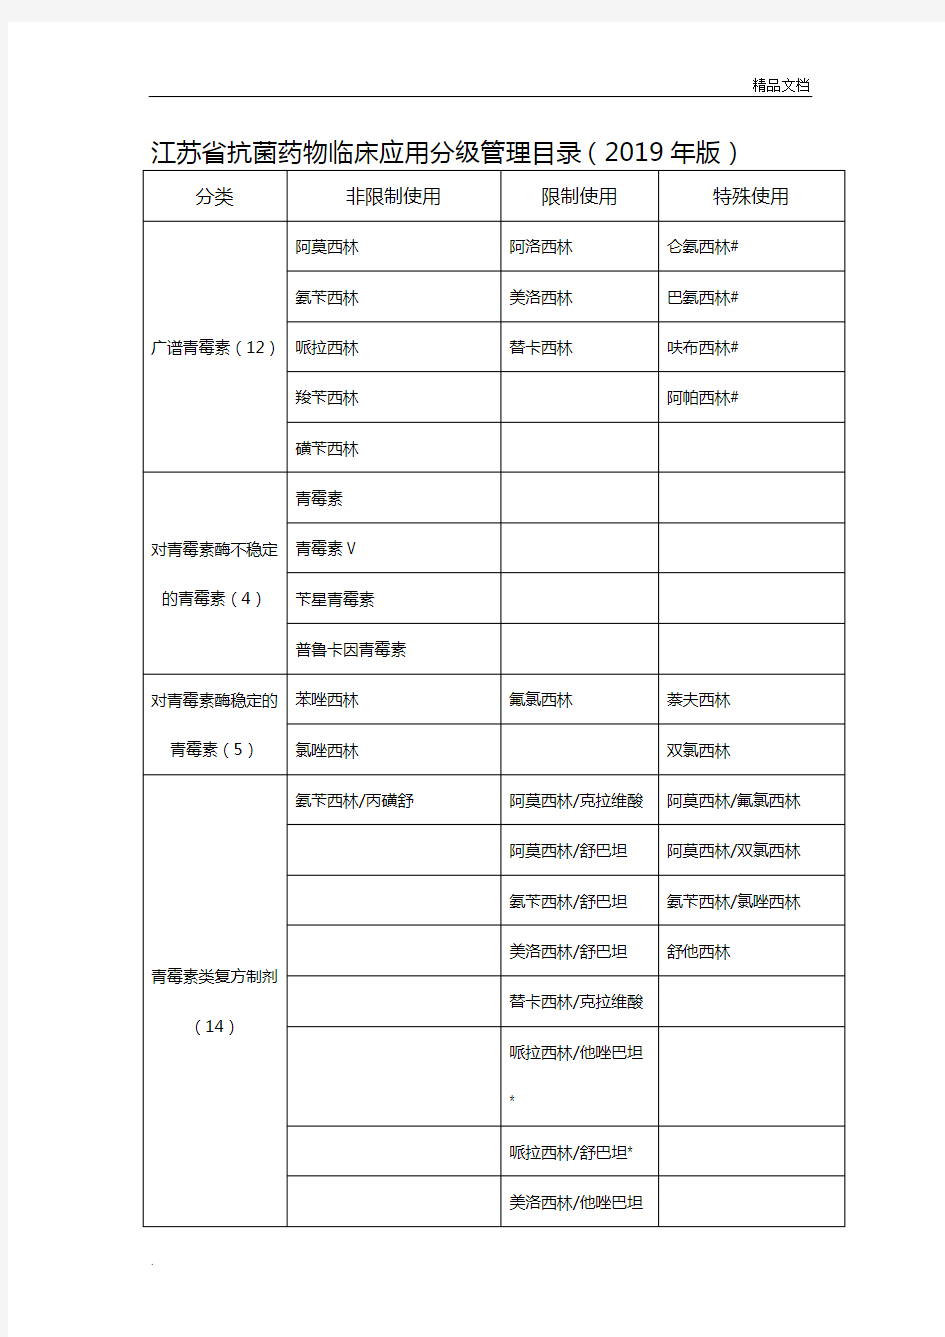 江苏省抗菌药物临床应用分级管理目录(2019年版)